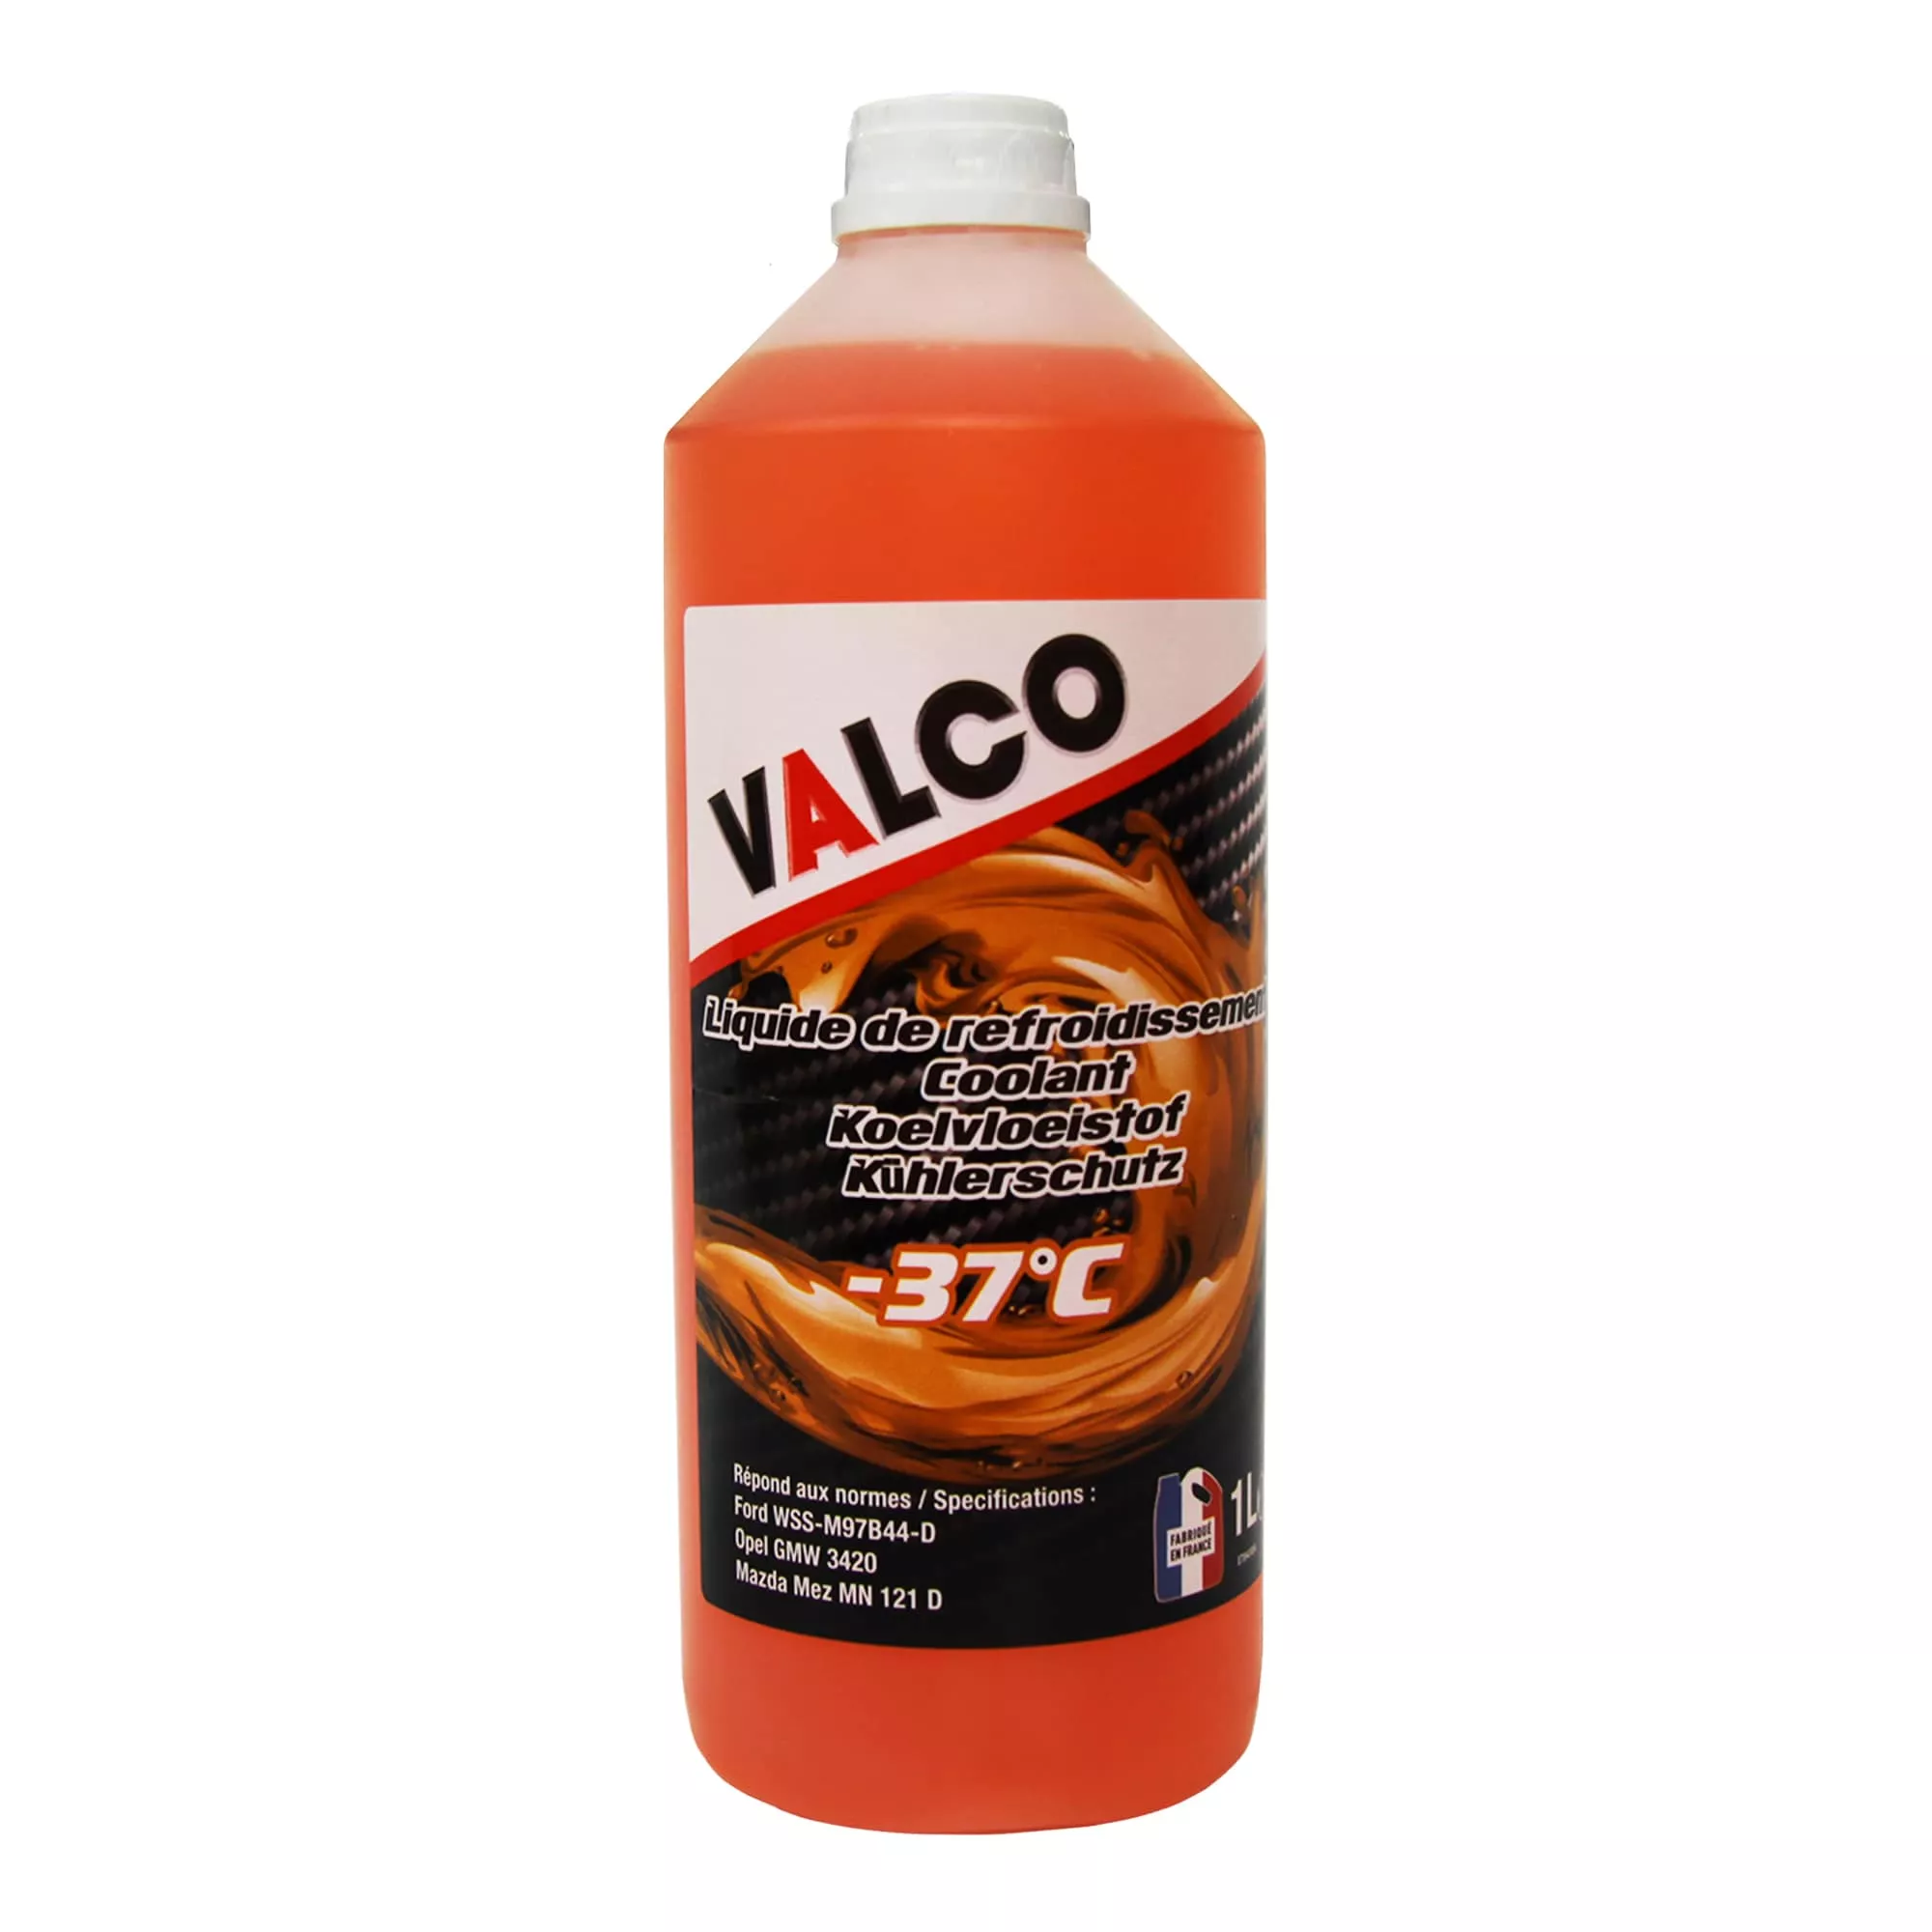 Антифриз Valco LR Ford/Mazda G12 -37°C оранжевый 1л (607468)